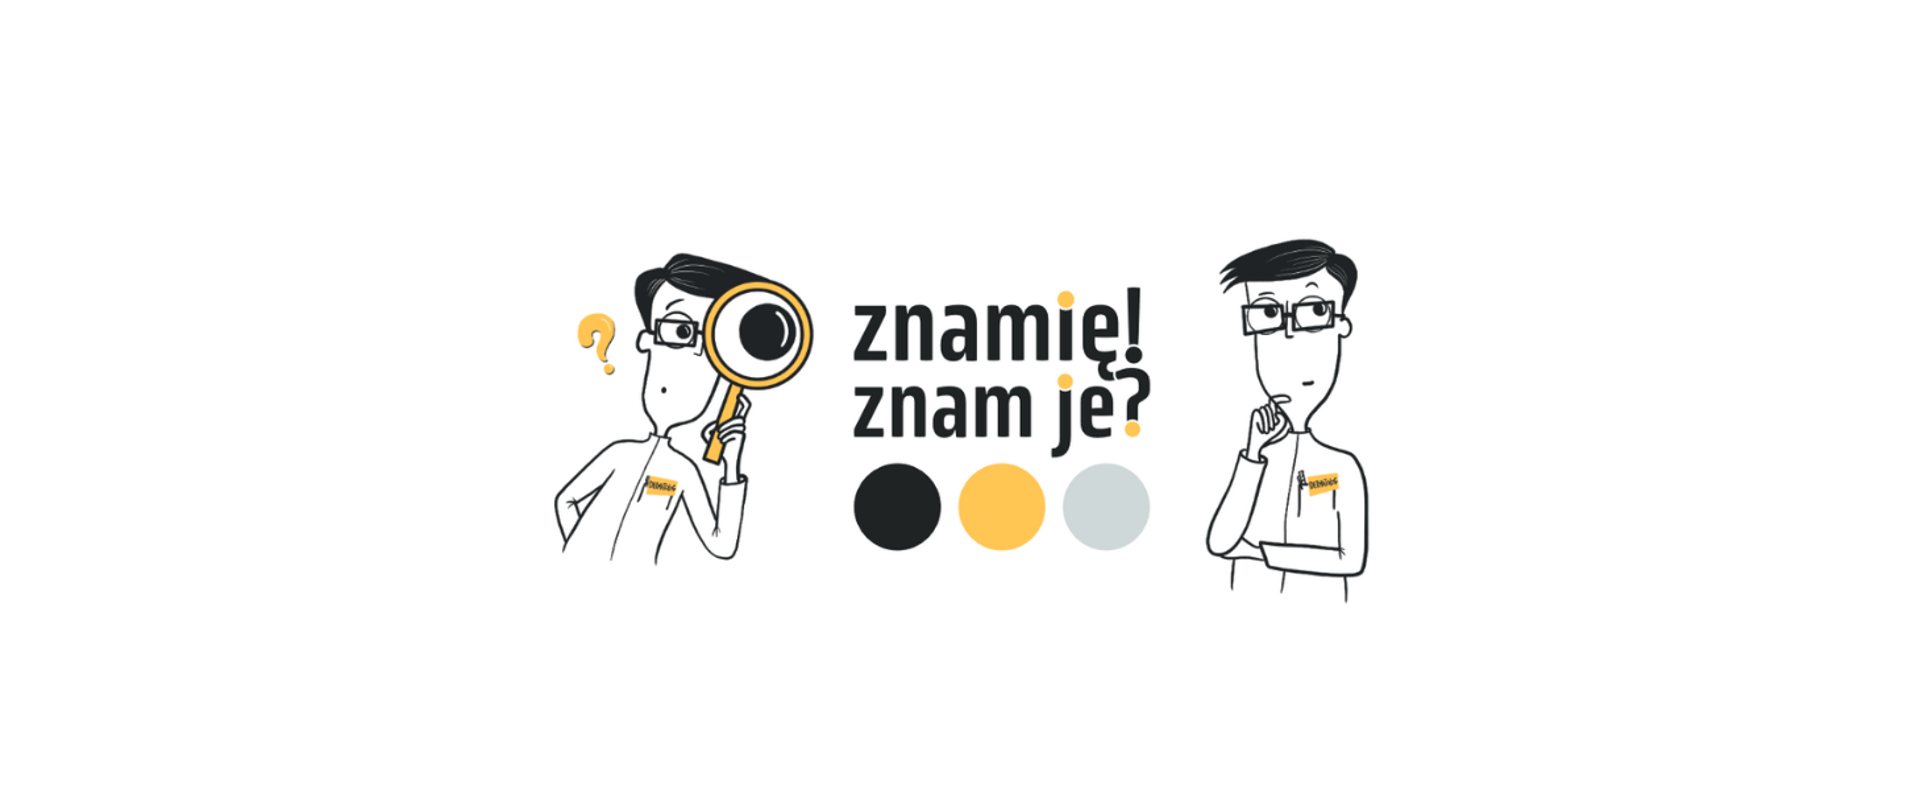 Na zdjęciu w kolorach czarno - żółto - szarym, logo programu Znamię! Znam je. Zdjęcie przedstawia po dwóch stronach logo mężczyzn. Z lewej strony mężczyzna patrzący przez lupę, z prawej strony mężczyzna trzymający rękę na twarzy w pozycji zamyślonej.